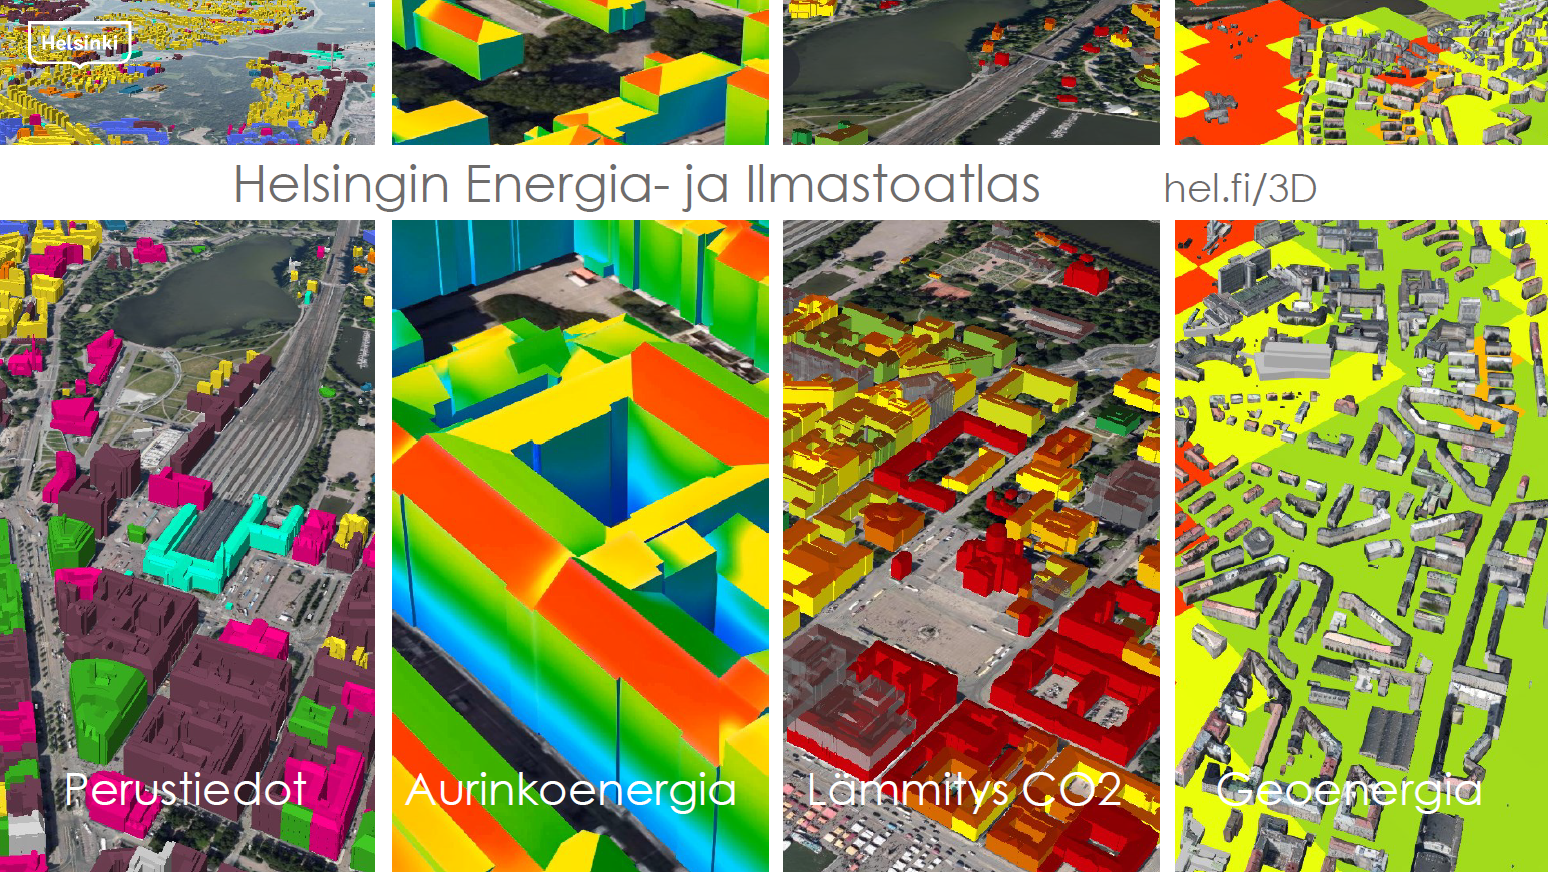 Helsingin Energia- ja ilmastoatlas. Kuvassa on neljän näkymää, jossa 3D-kartalla kuvataan rakennusten aurinkoenergian hyödyntämistehokkuutta, lämmityksen CO2 päästöjä, geoenergian hyödyntämismahdollisuutta sekä perustietoja rakennuksista.